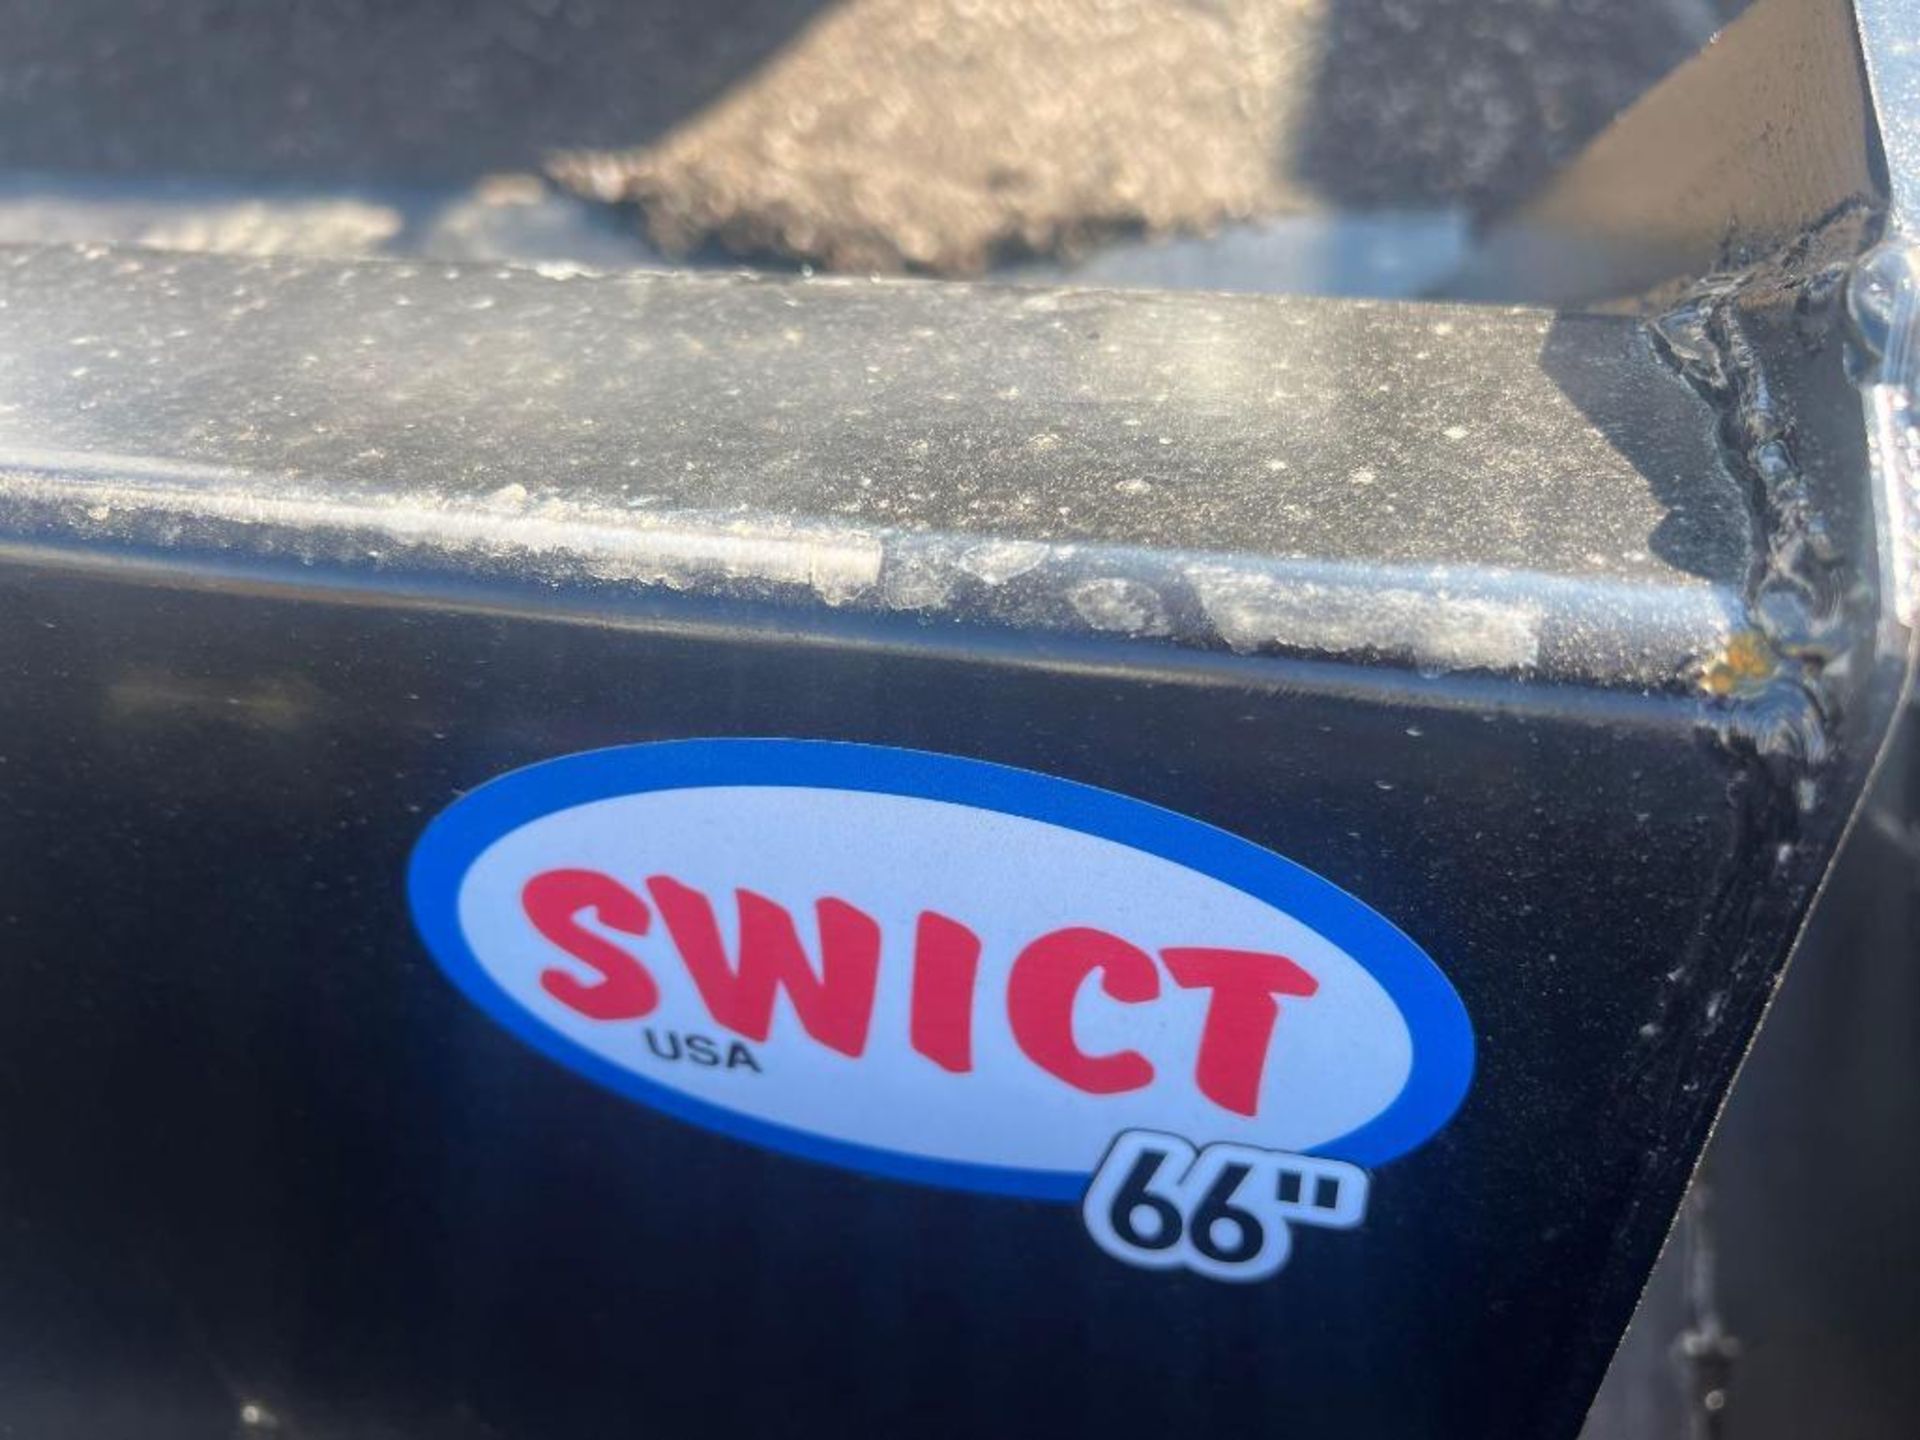 NEW Swict Skid Steer Bucket 66" - Image 2 of 2